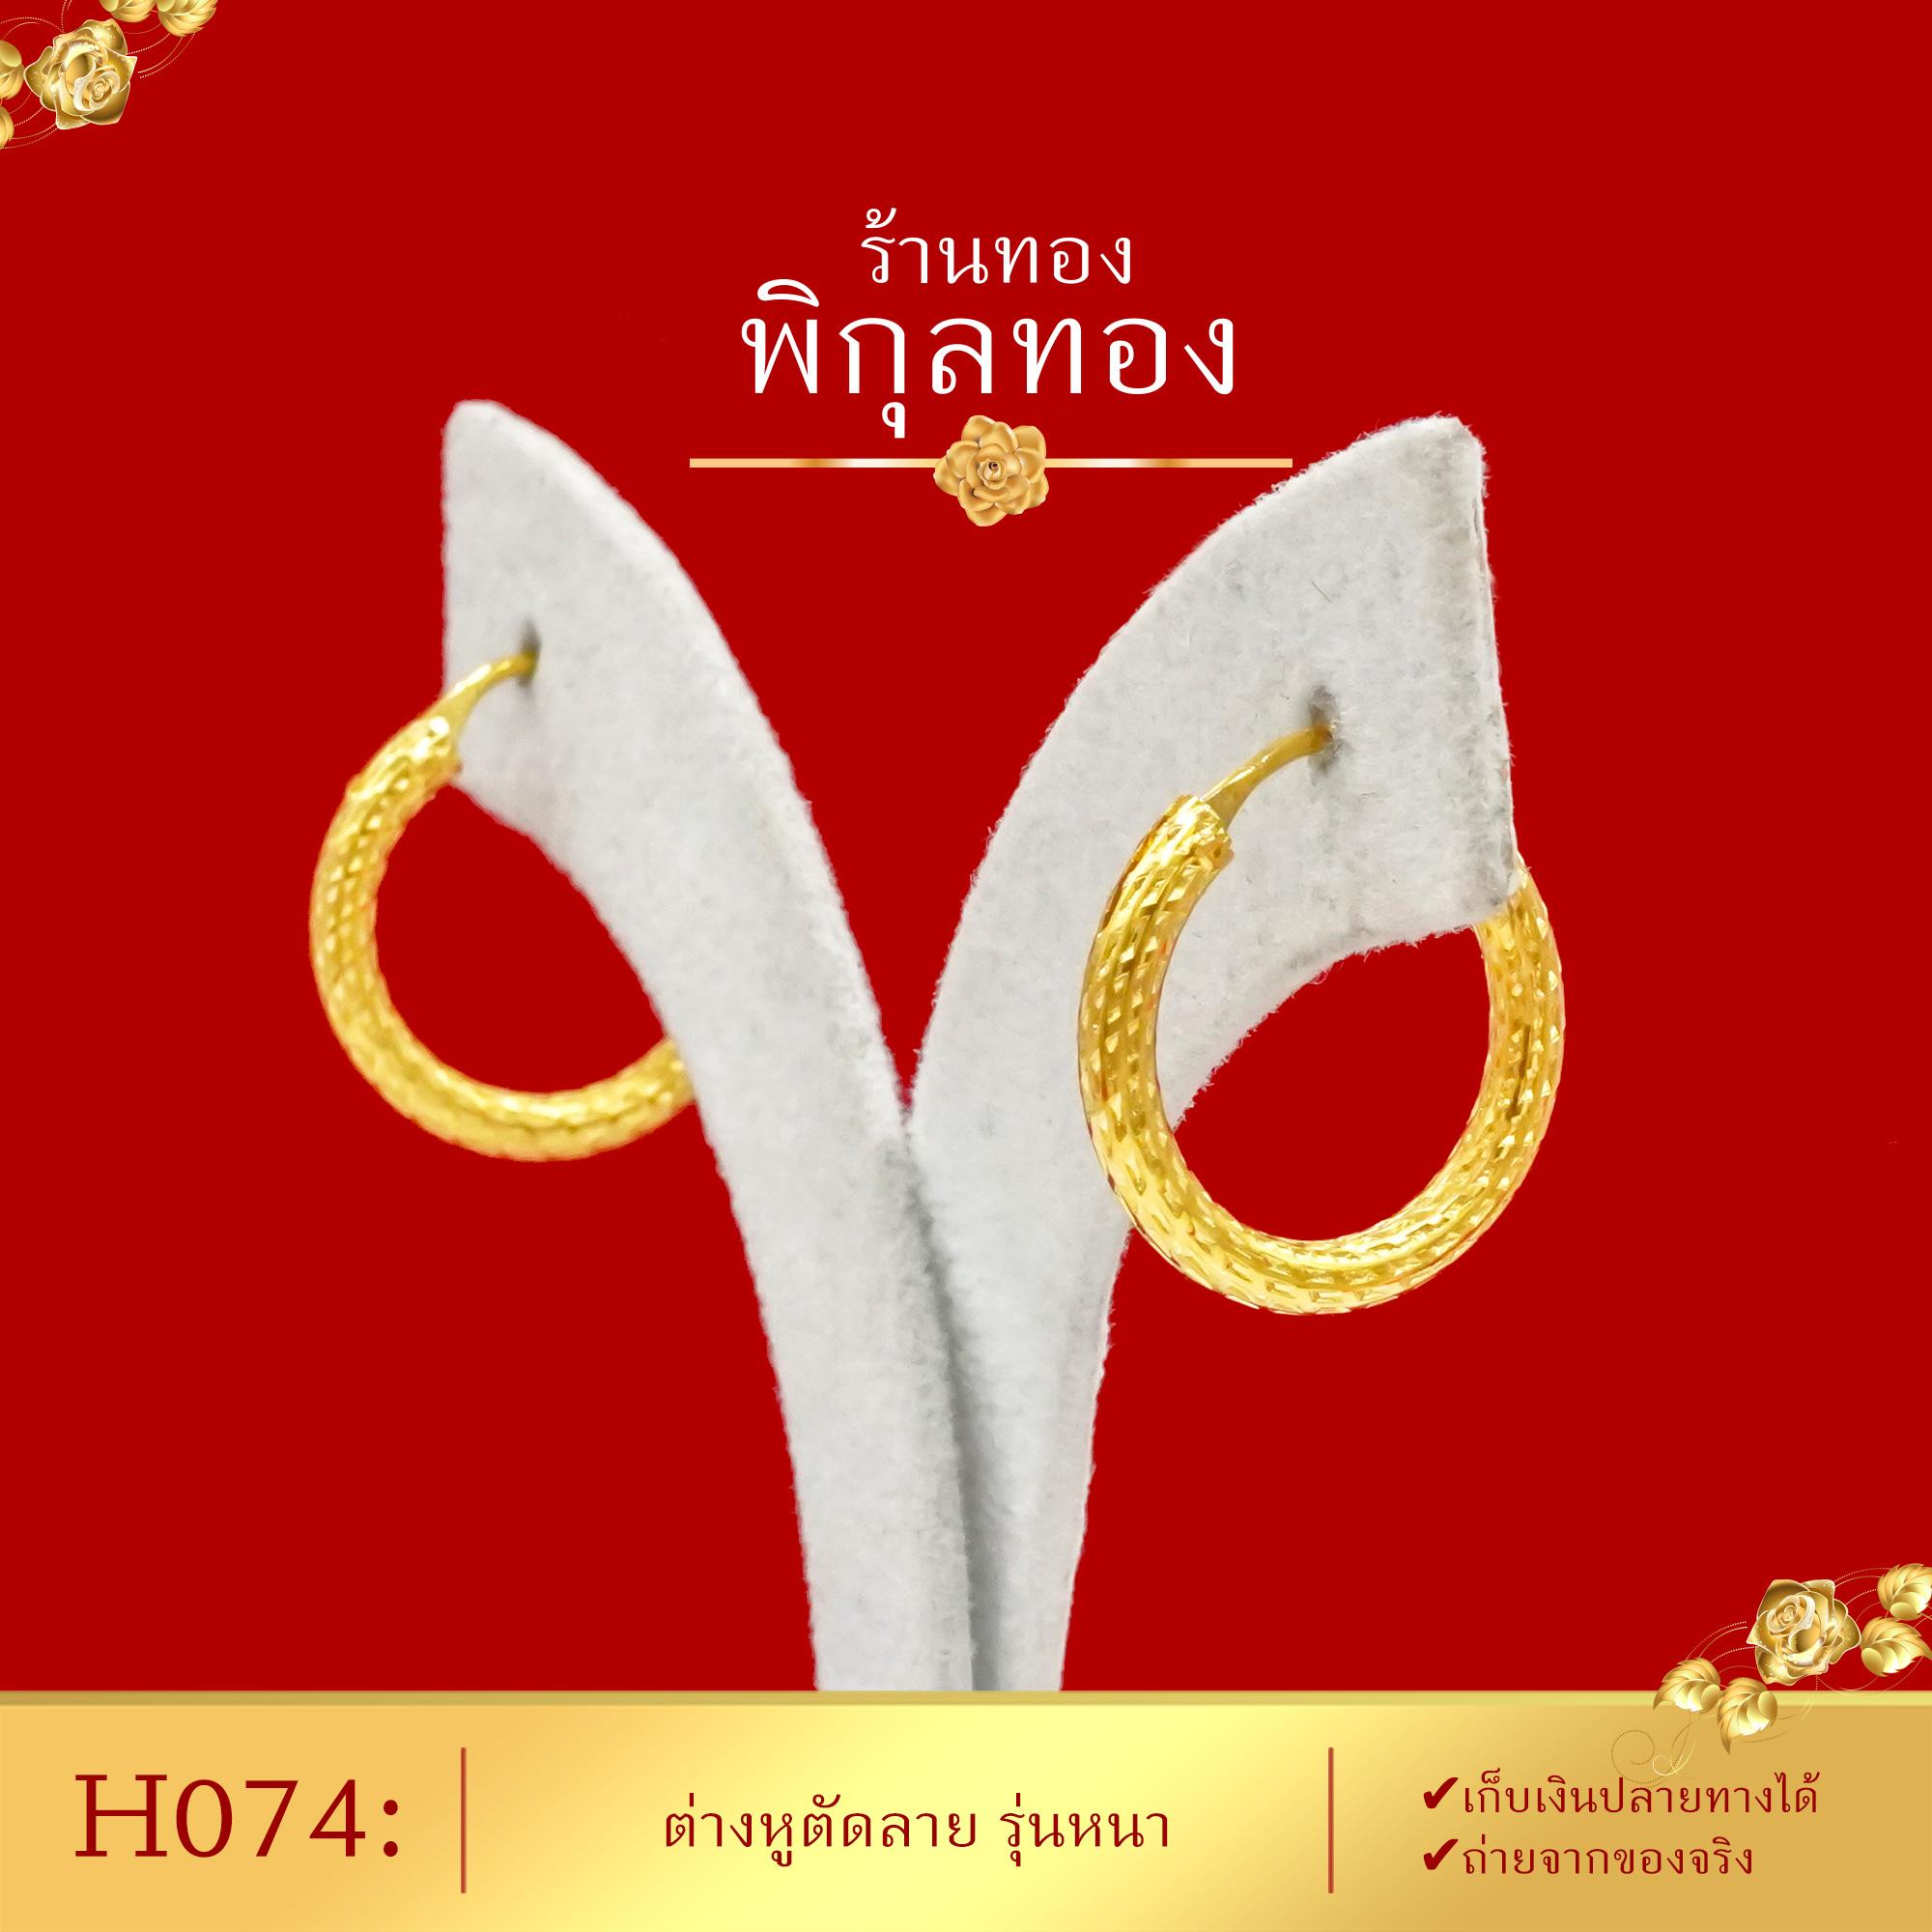 เก็บปลายทางได้_Pikunthong- รุ่น H074 ต่างหูทอง ห่วงหนา ตัดลาย (หุ้มทองแท้ เกรดพิเศษ)